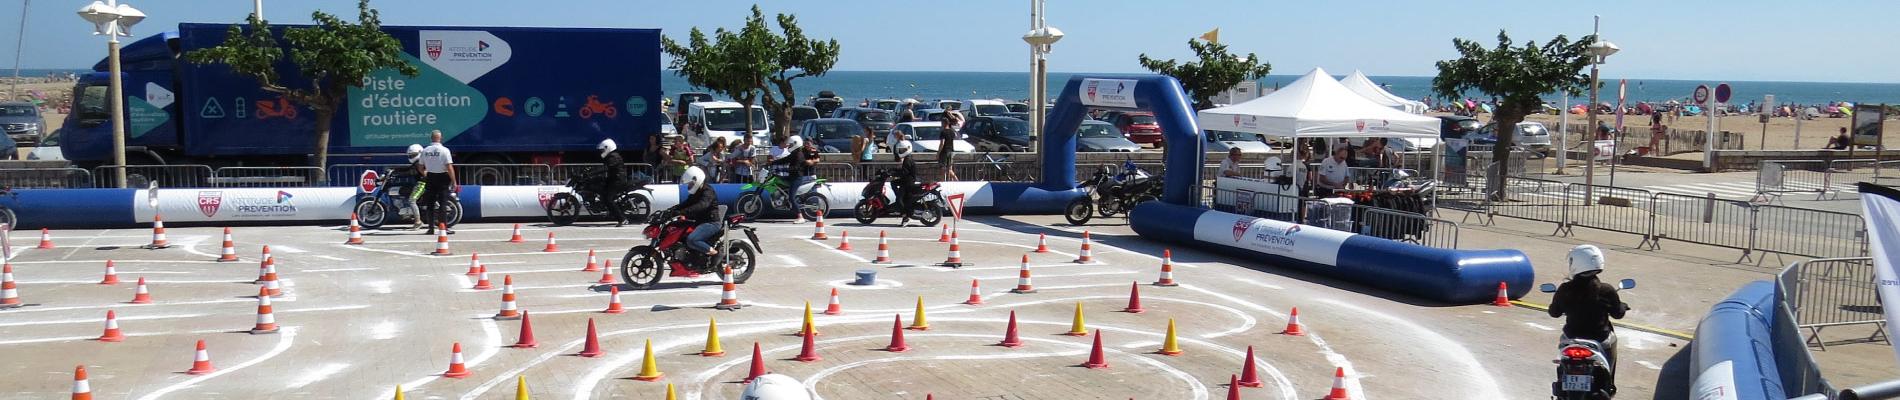 Initiation au deux-roues : les jeunes en piste pour la sécurité à Valras (34), du 17 au 19 juillet